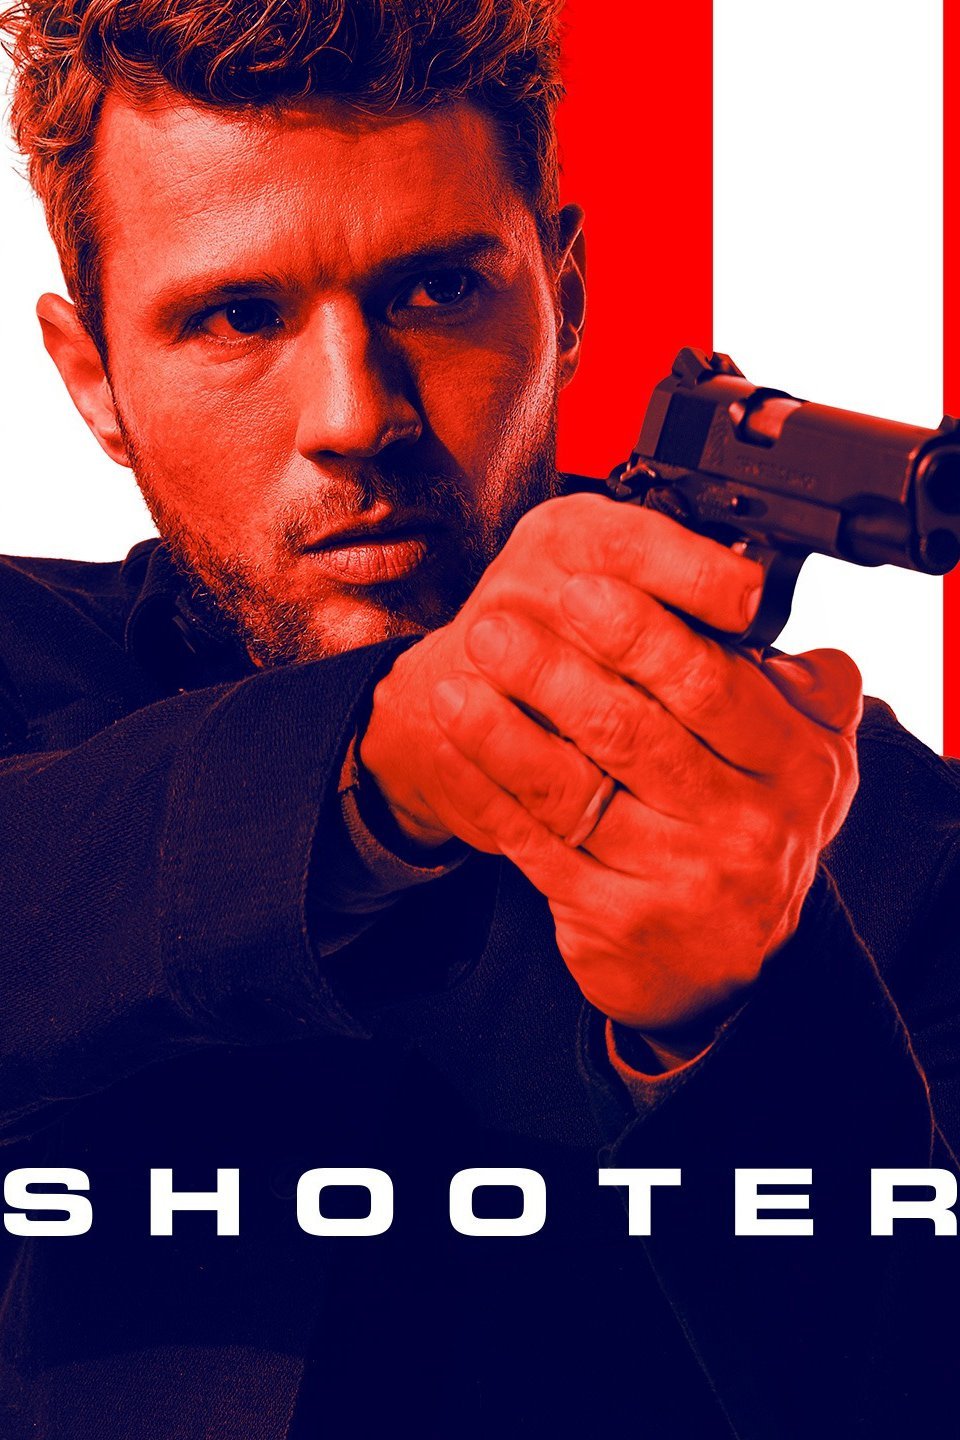 Shooter 2017: Season 2